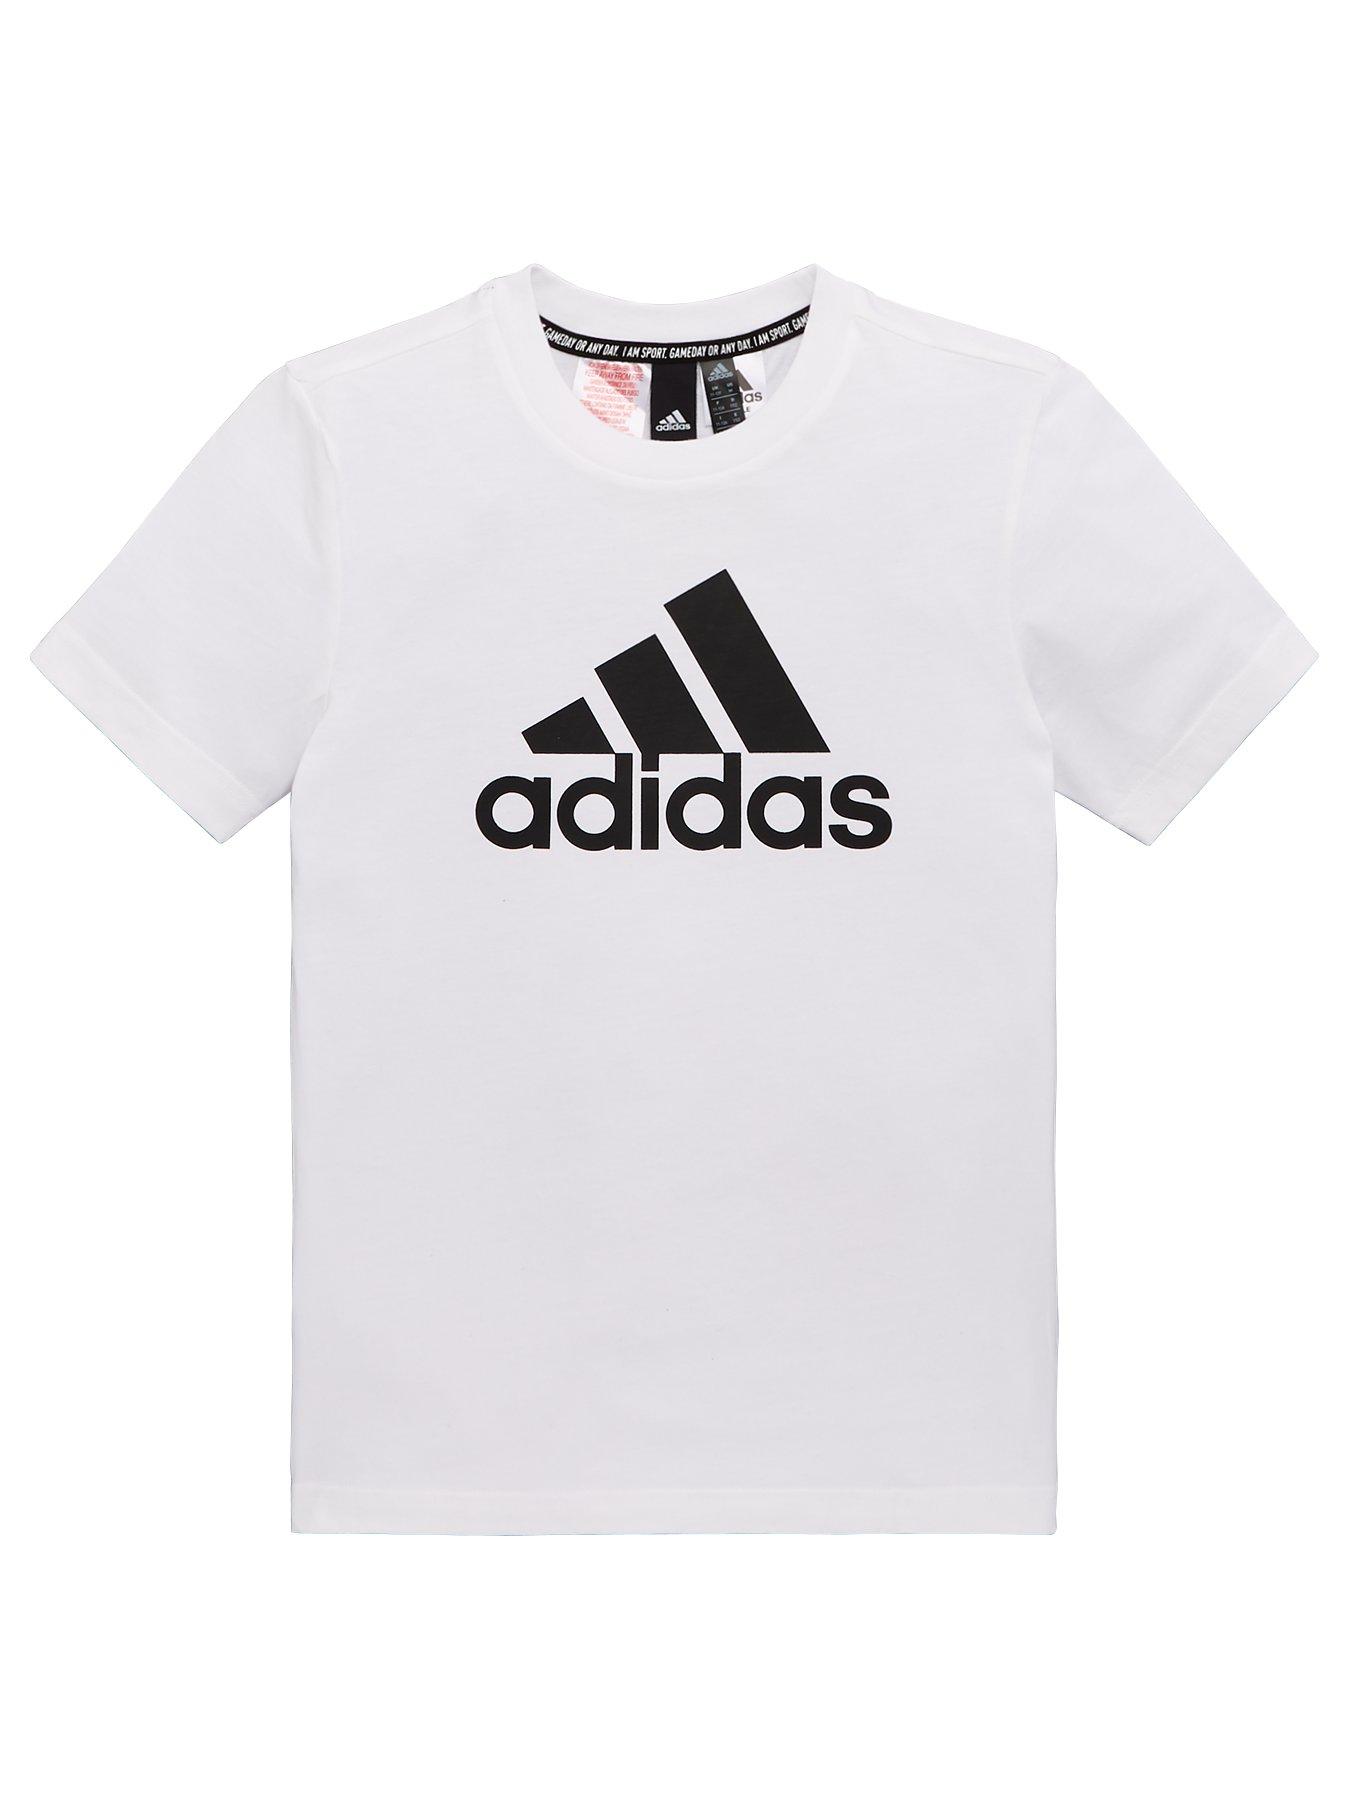 Pale Pink Adidas Hoodie 384f4c - roblox white adidas shirt id rldm